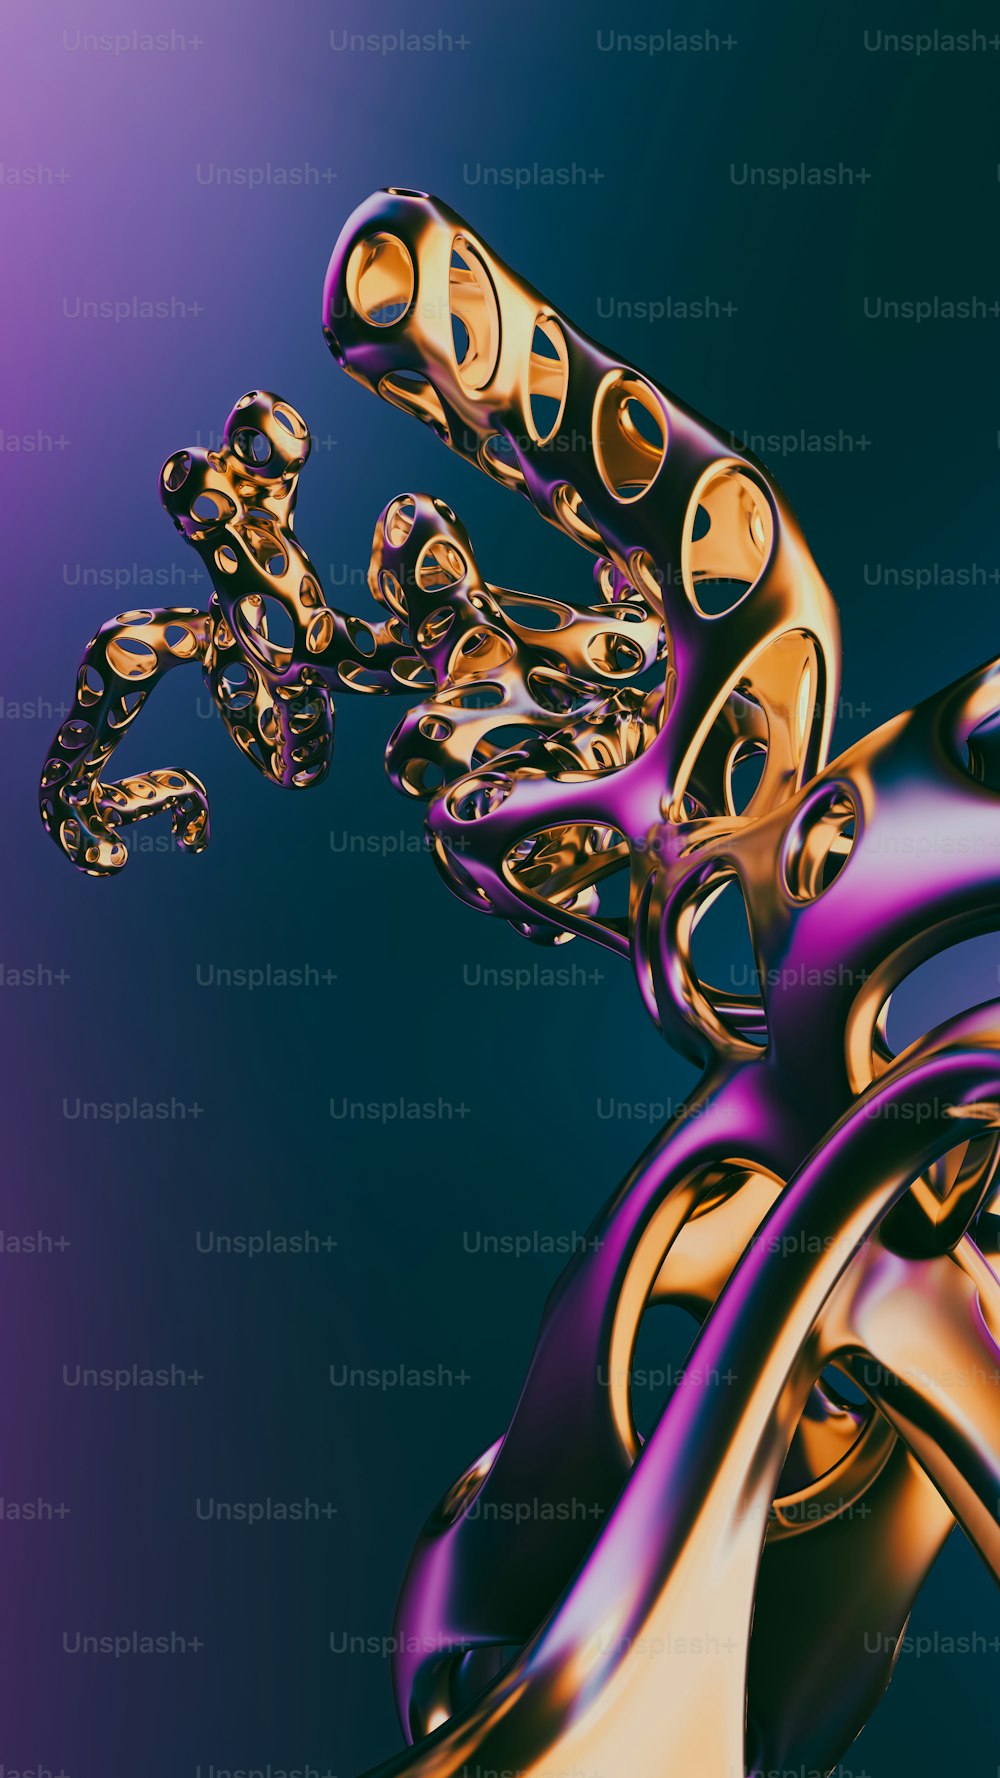 Una imagen generada por computadora de un objeto dorado y púrpura